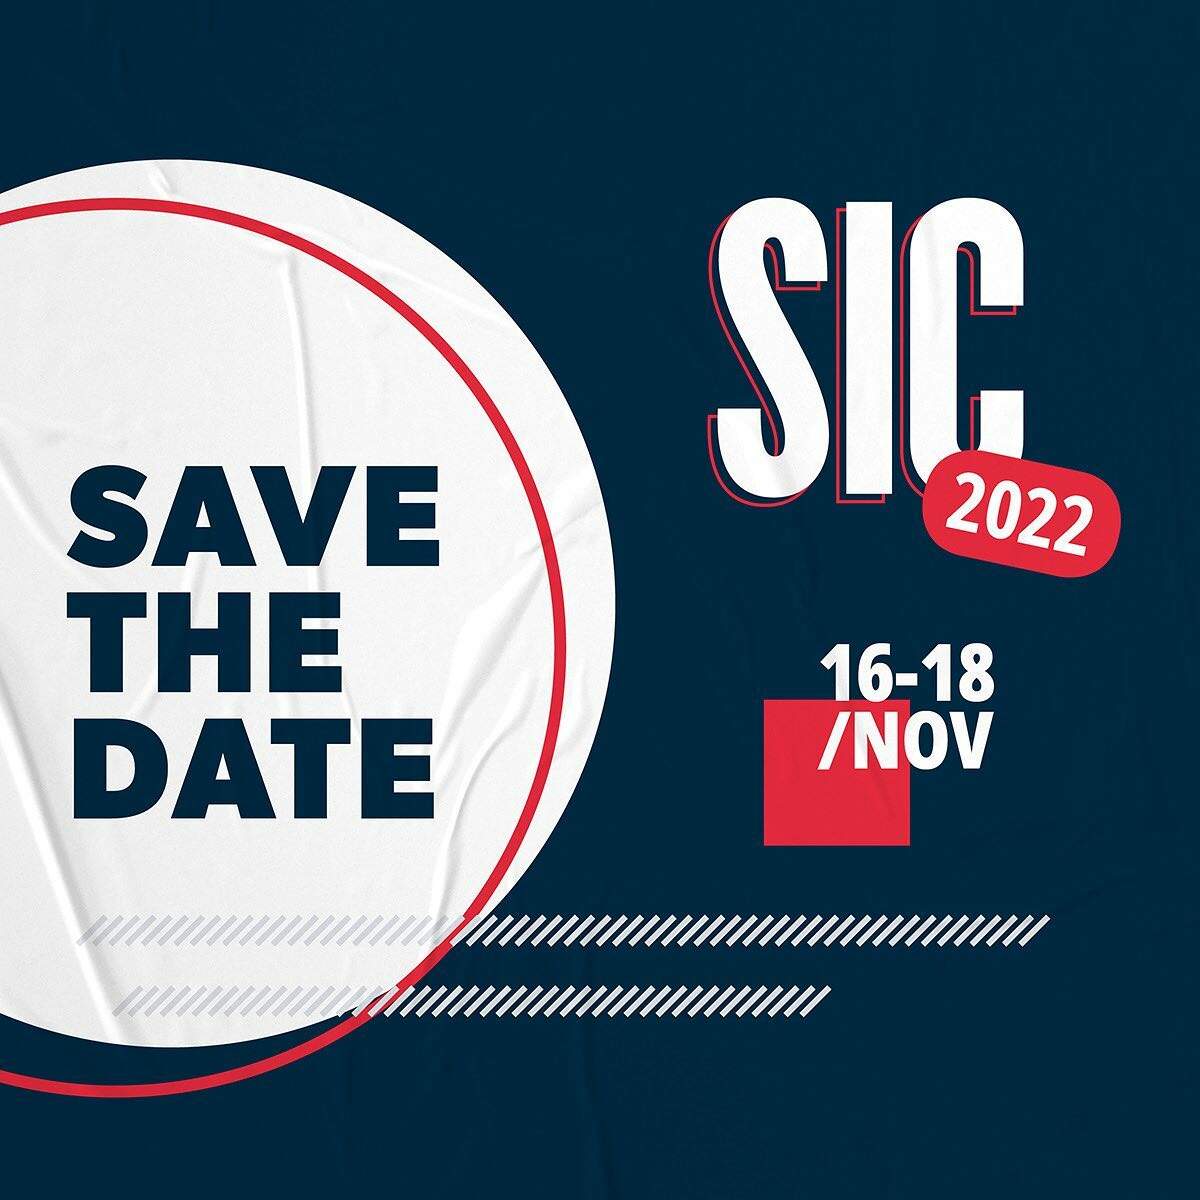 Semana Internacional do Café - SIC 2022